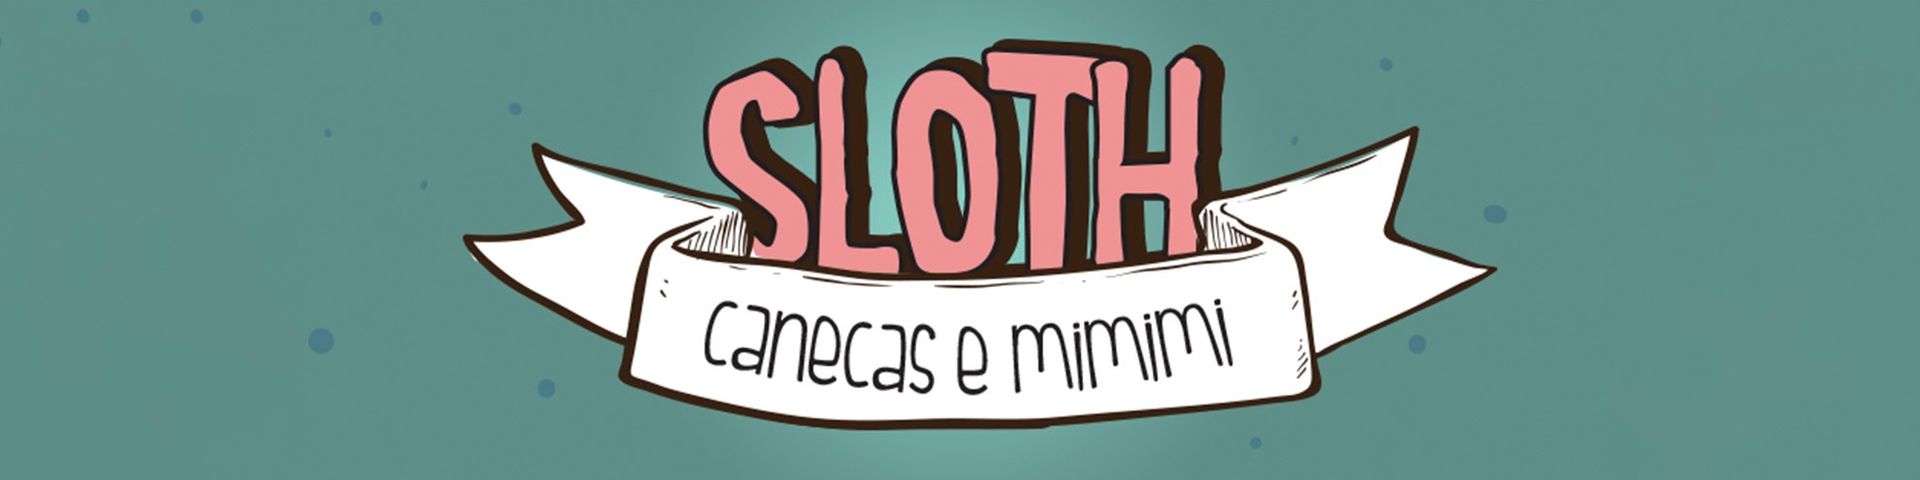 Nome da loja  Sloth